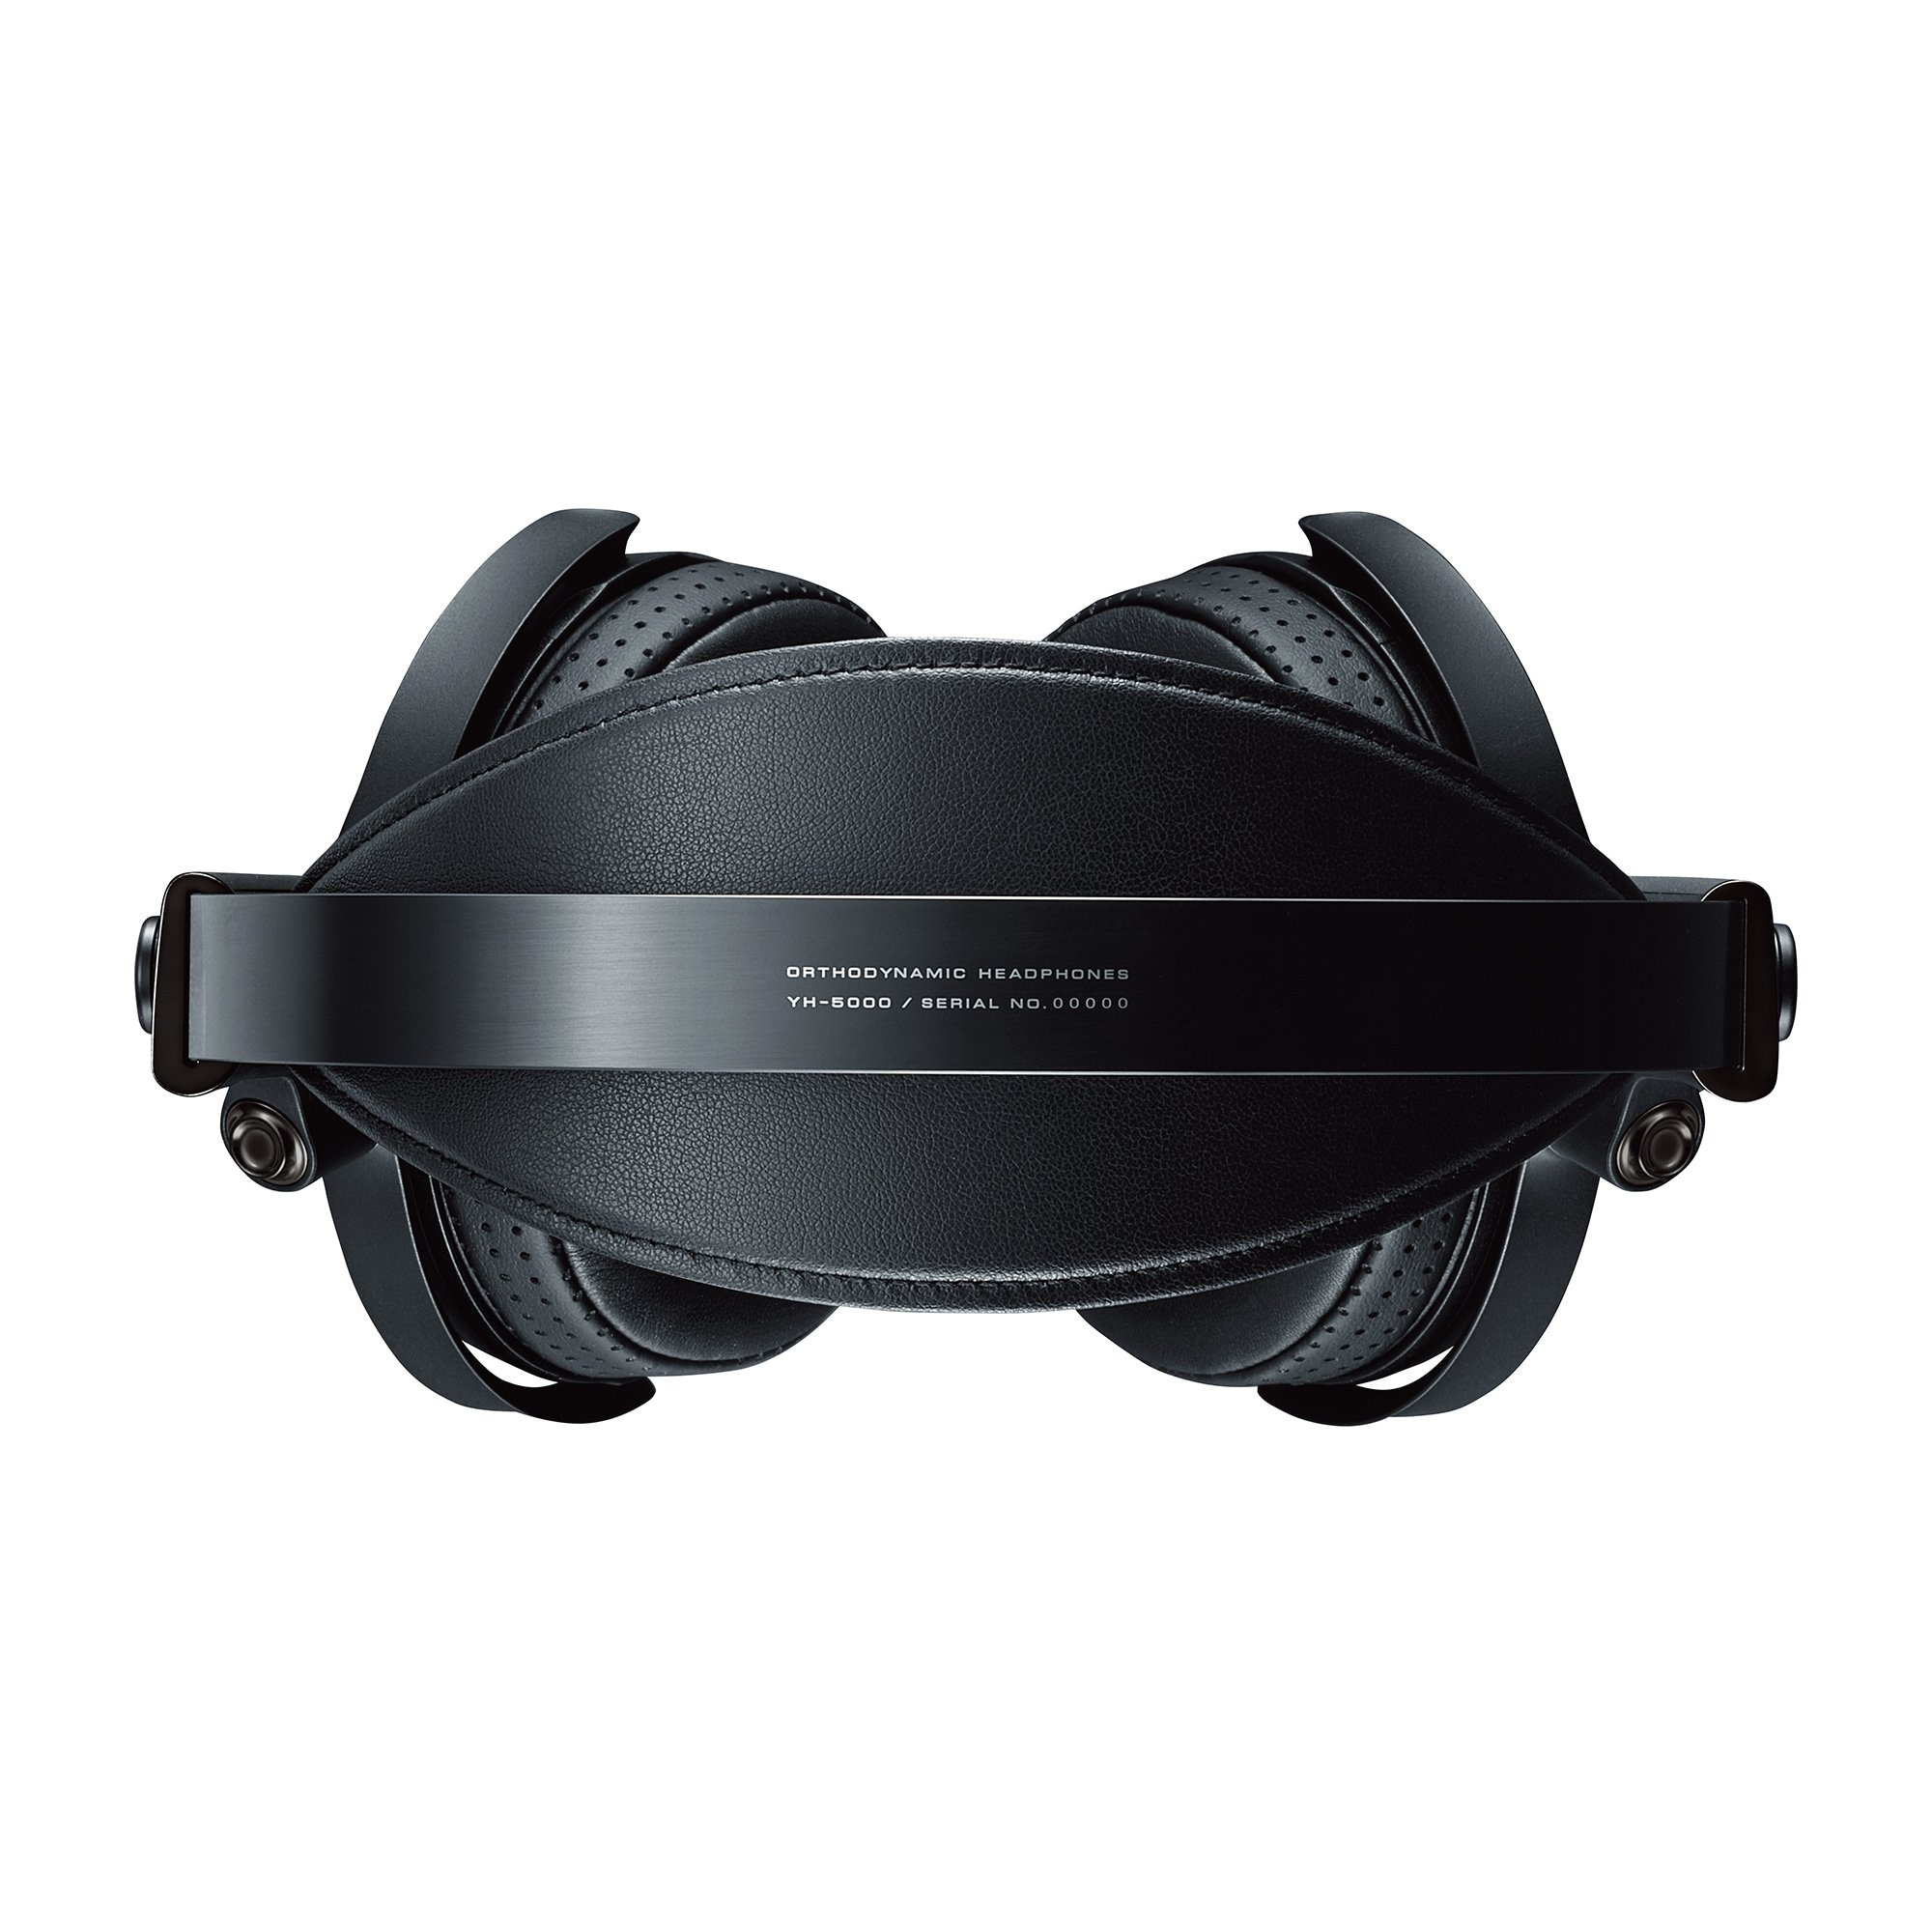 最高品質の YH-5000SE Visual Raynex様専用② オーディオ機器